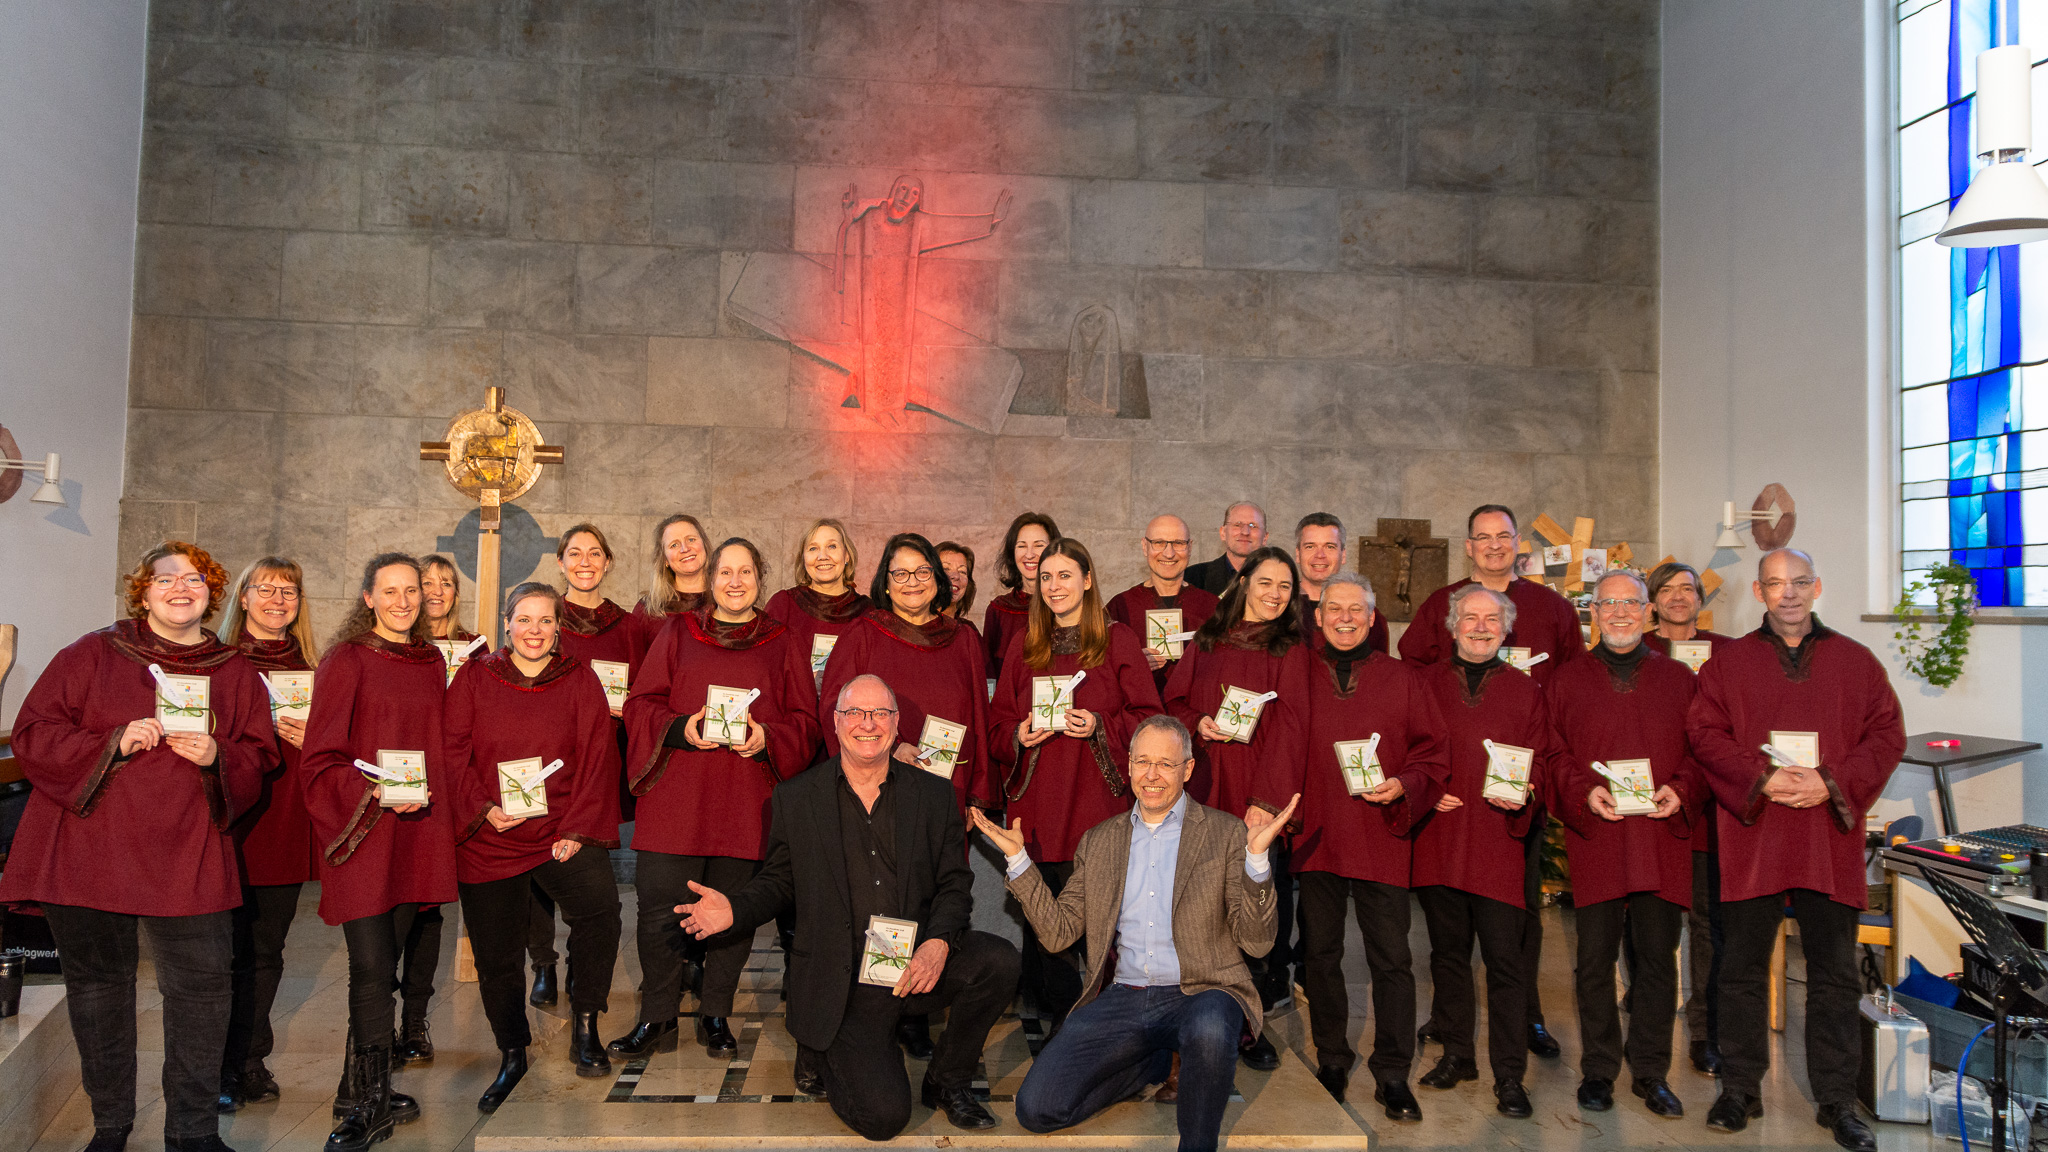 Tolles Konzert der “Voices Of Joy”in Meitingen zu Gunsten von #felsensteinbautzukunft